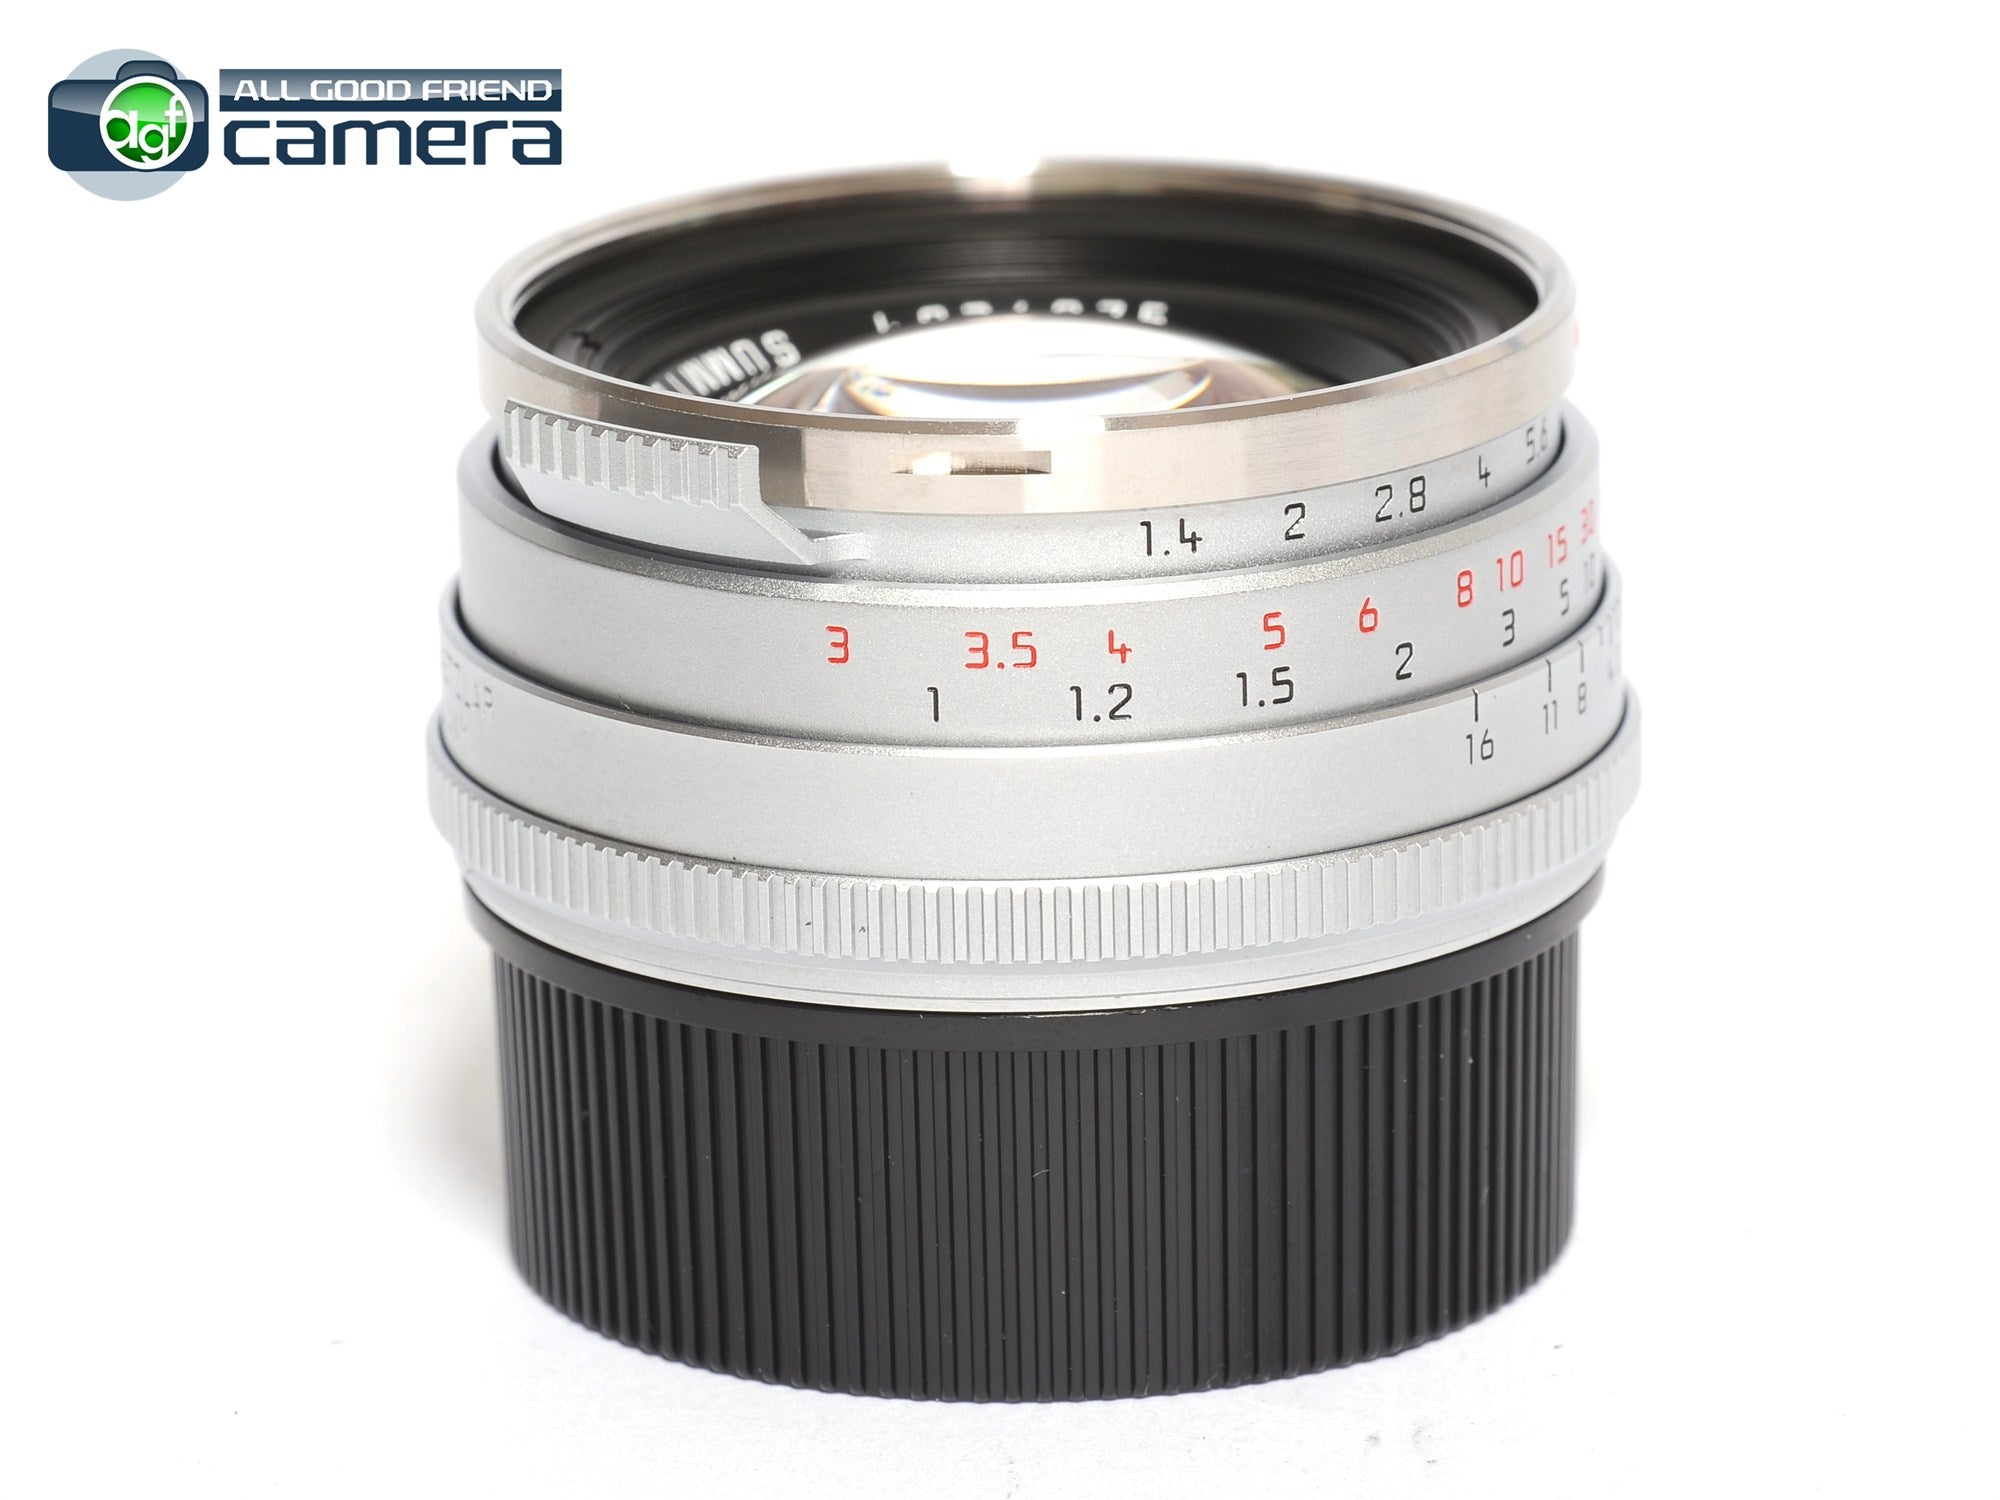 Leica Summilux-M 35mm F/1.4 Lens Ver.1 'Steel Rim' Reissued 11301